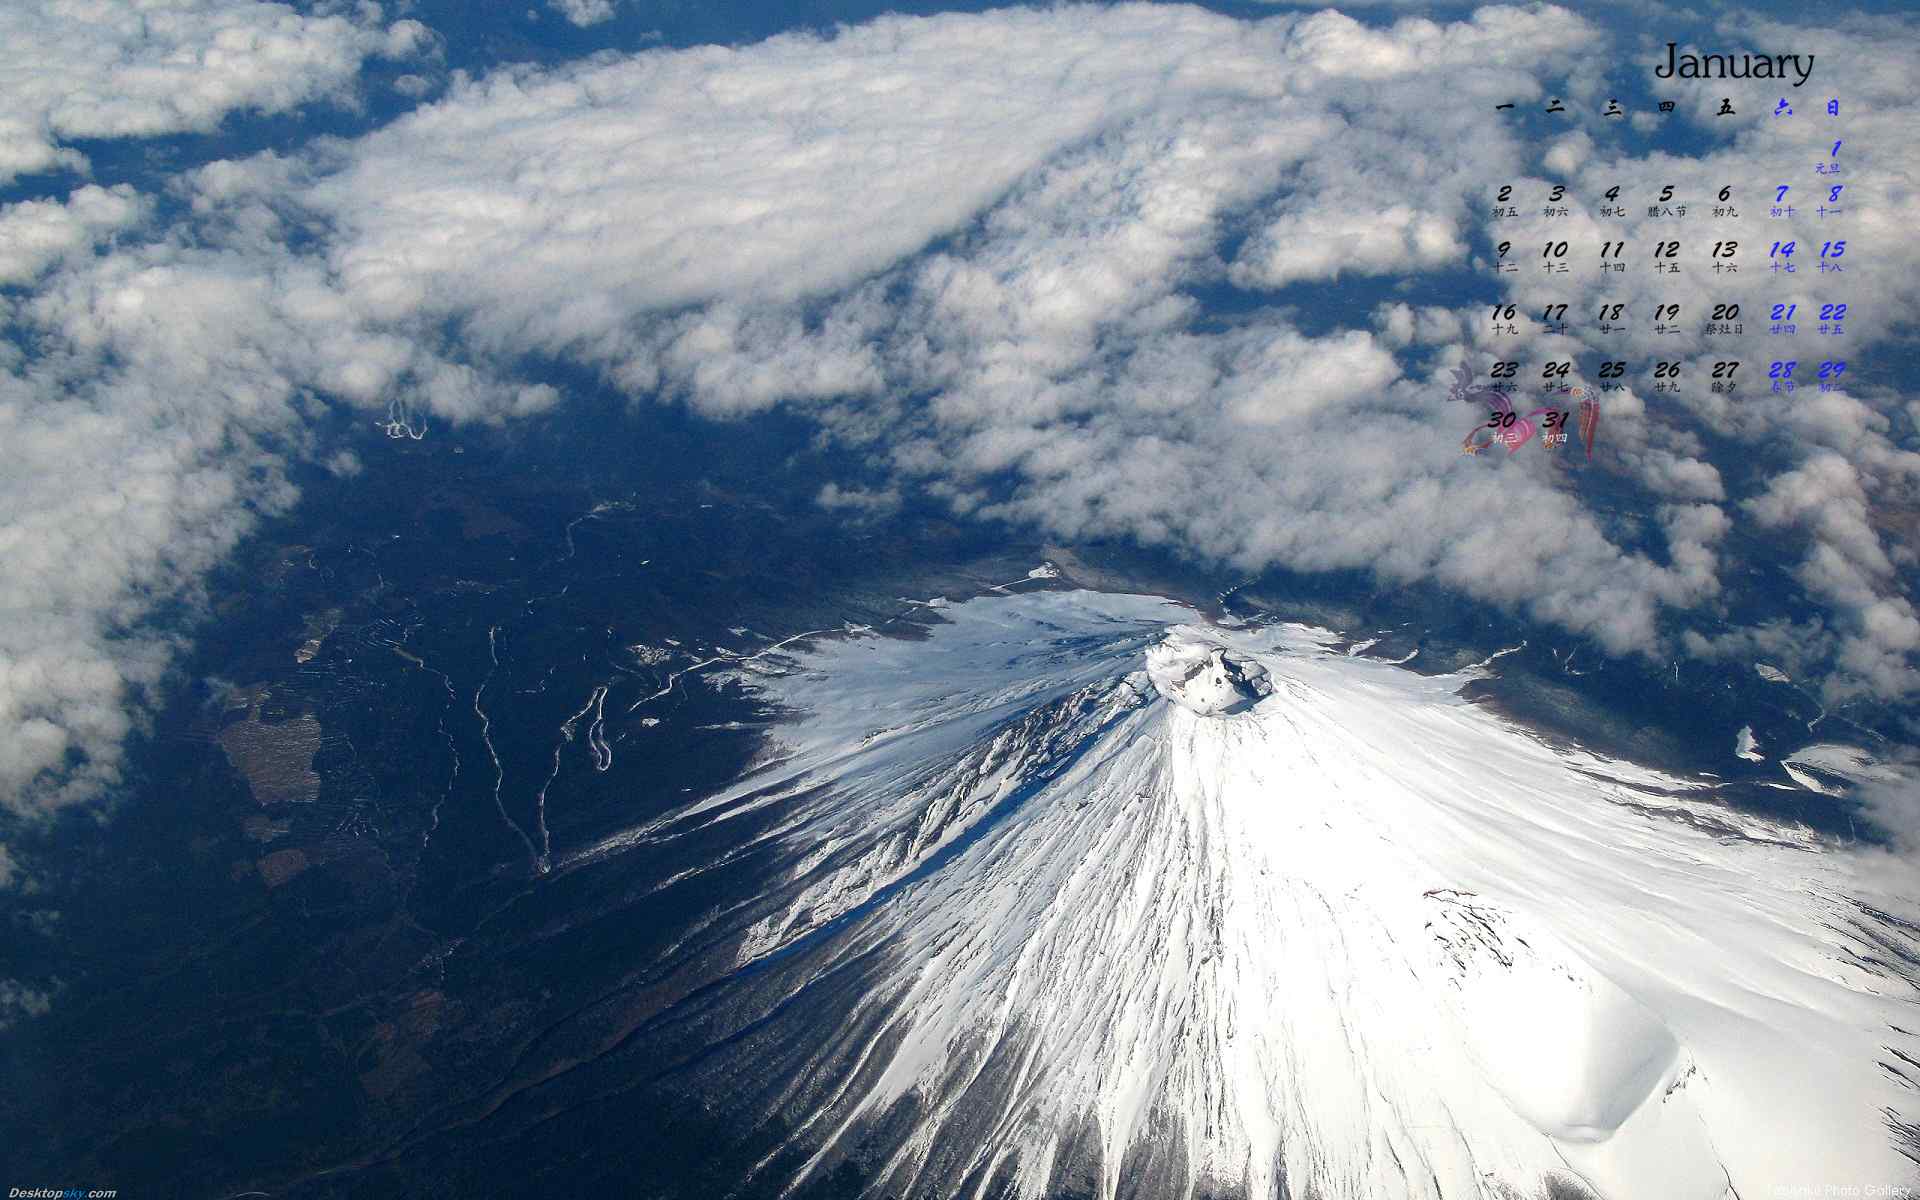 2017年1月日历唯美富士山风景壁纸